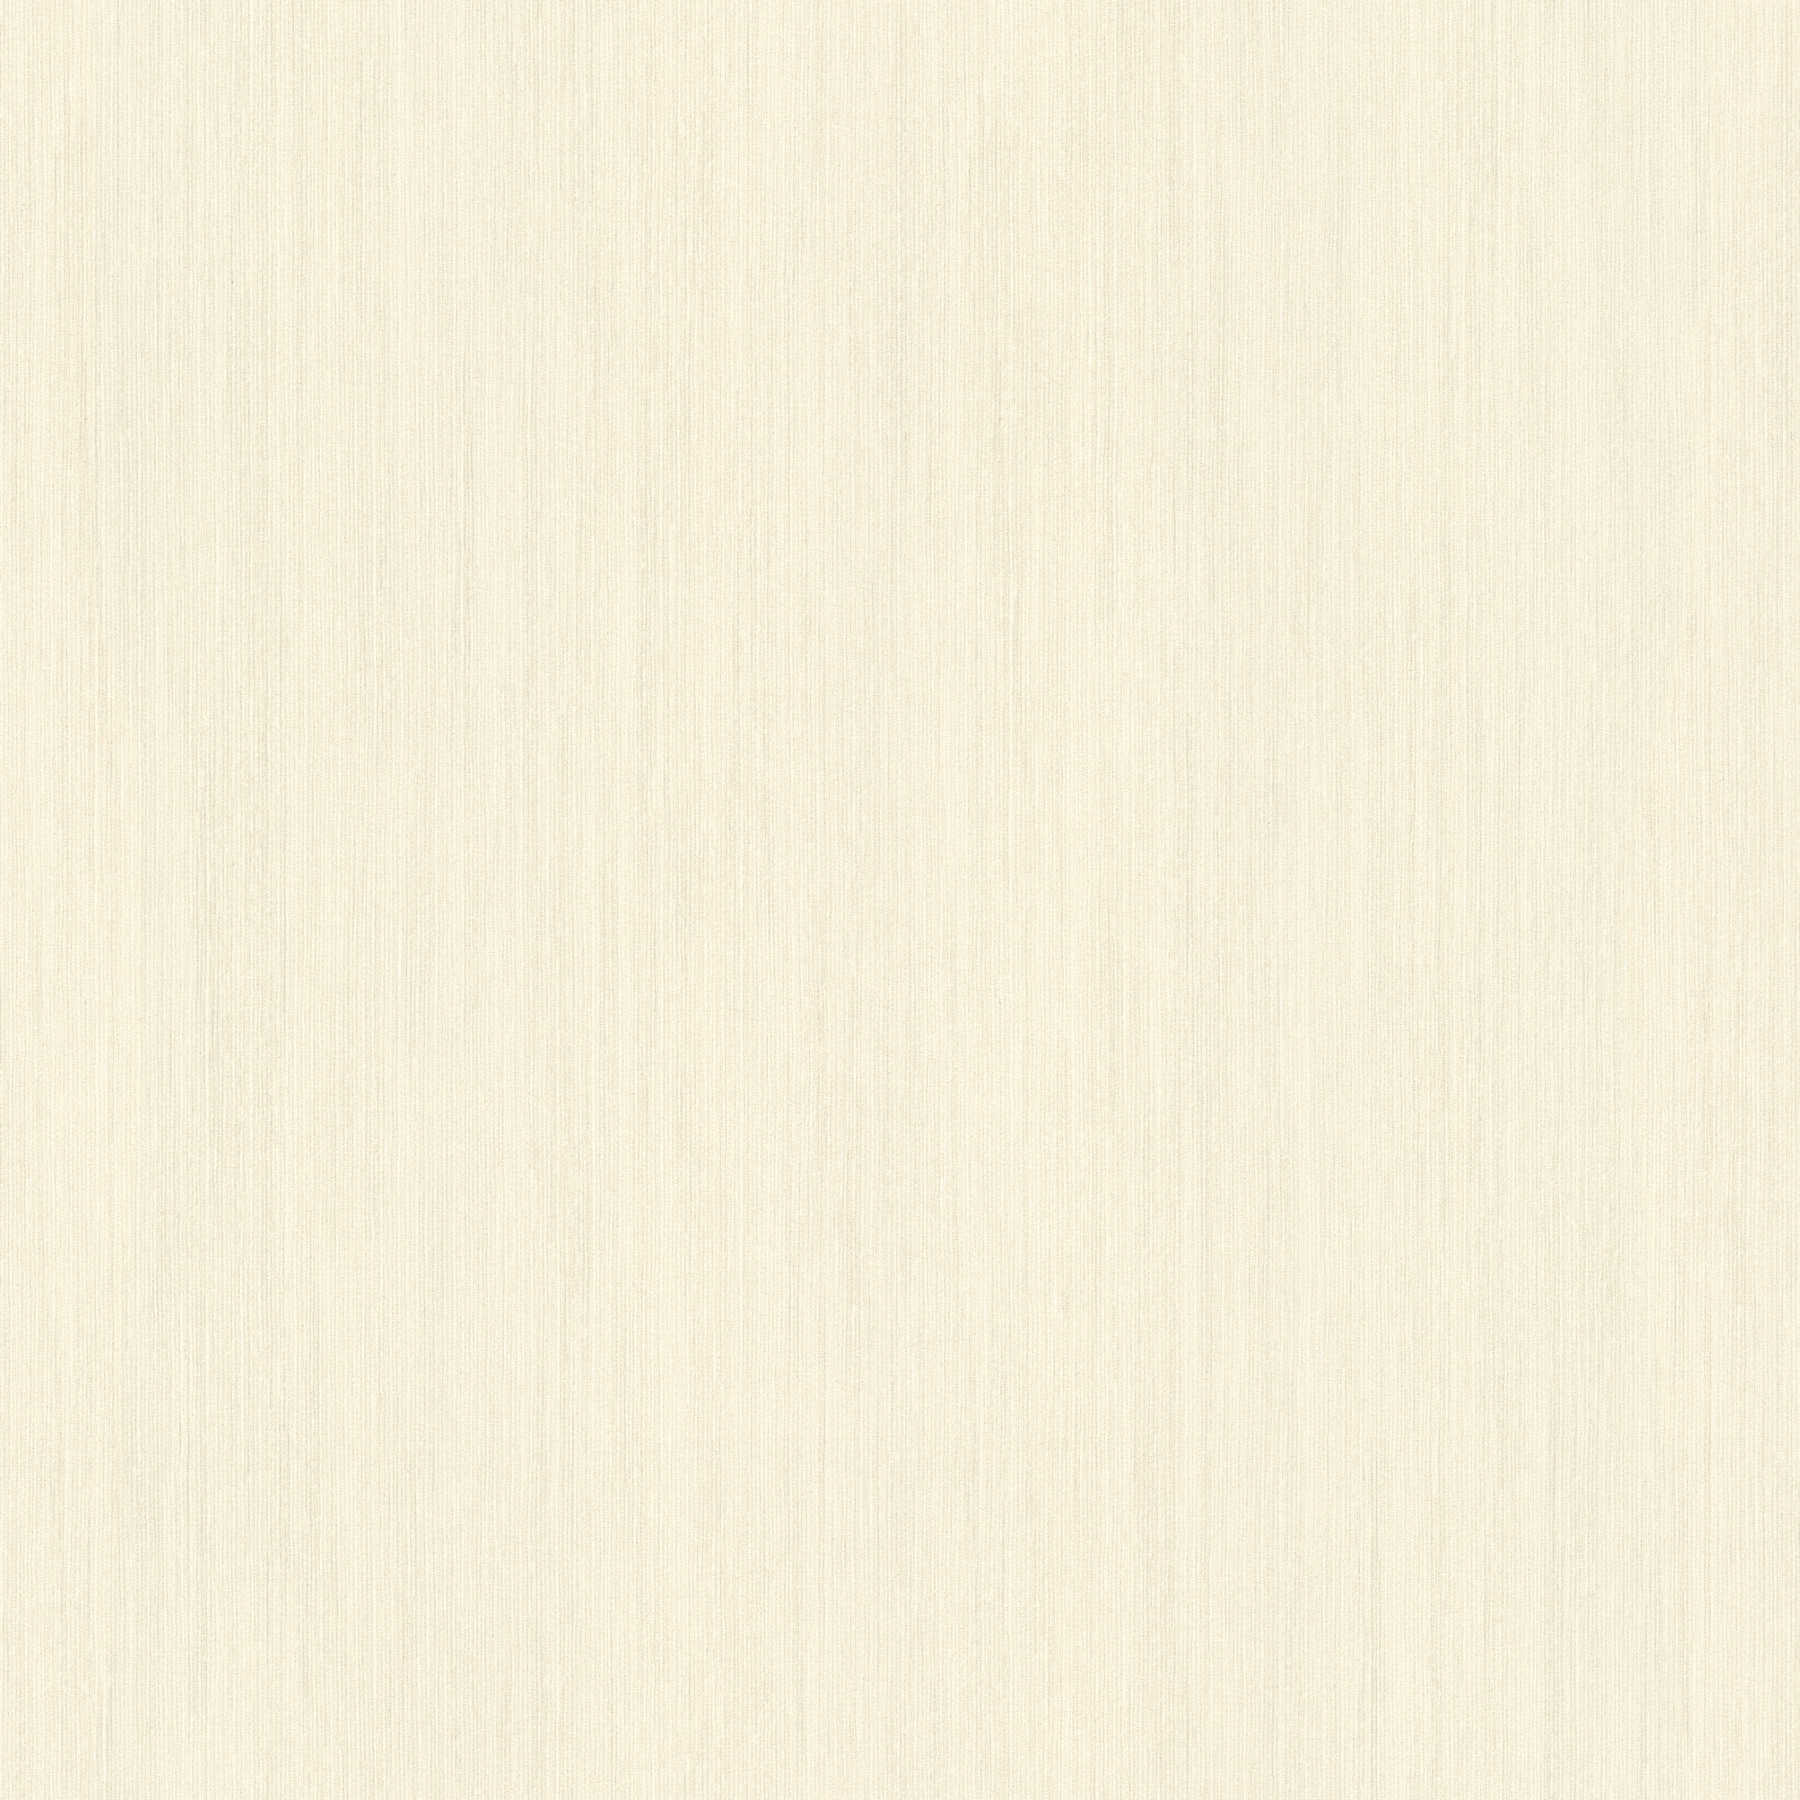 Eenheidsbehang crème-beige met reliëfpatroon & mat oppervlak
